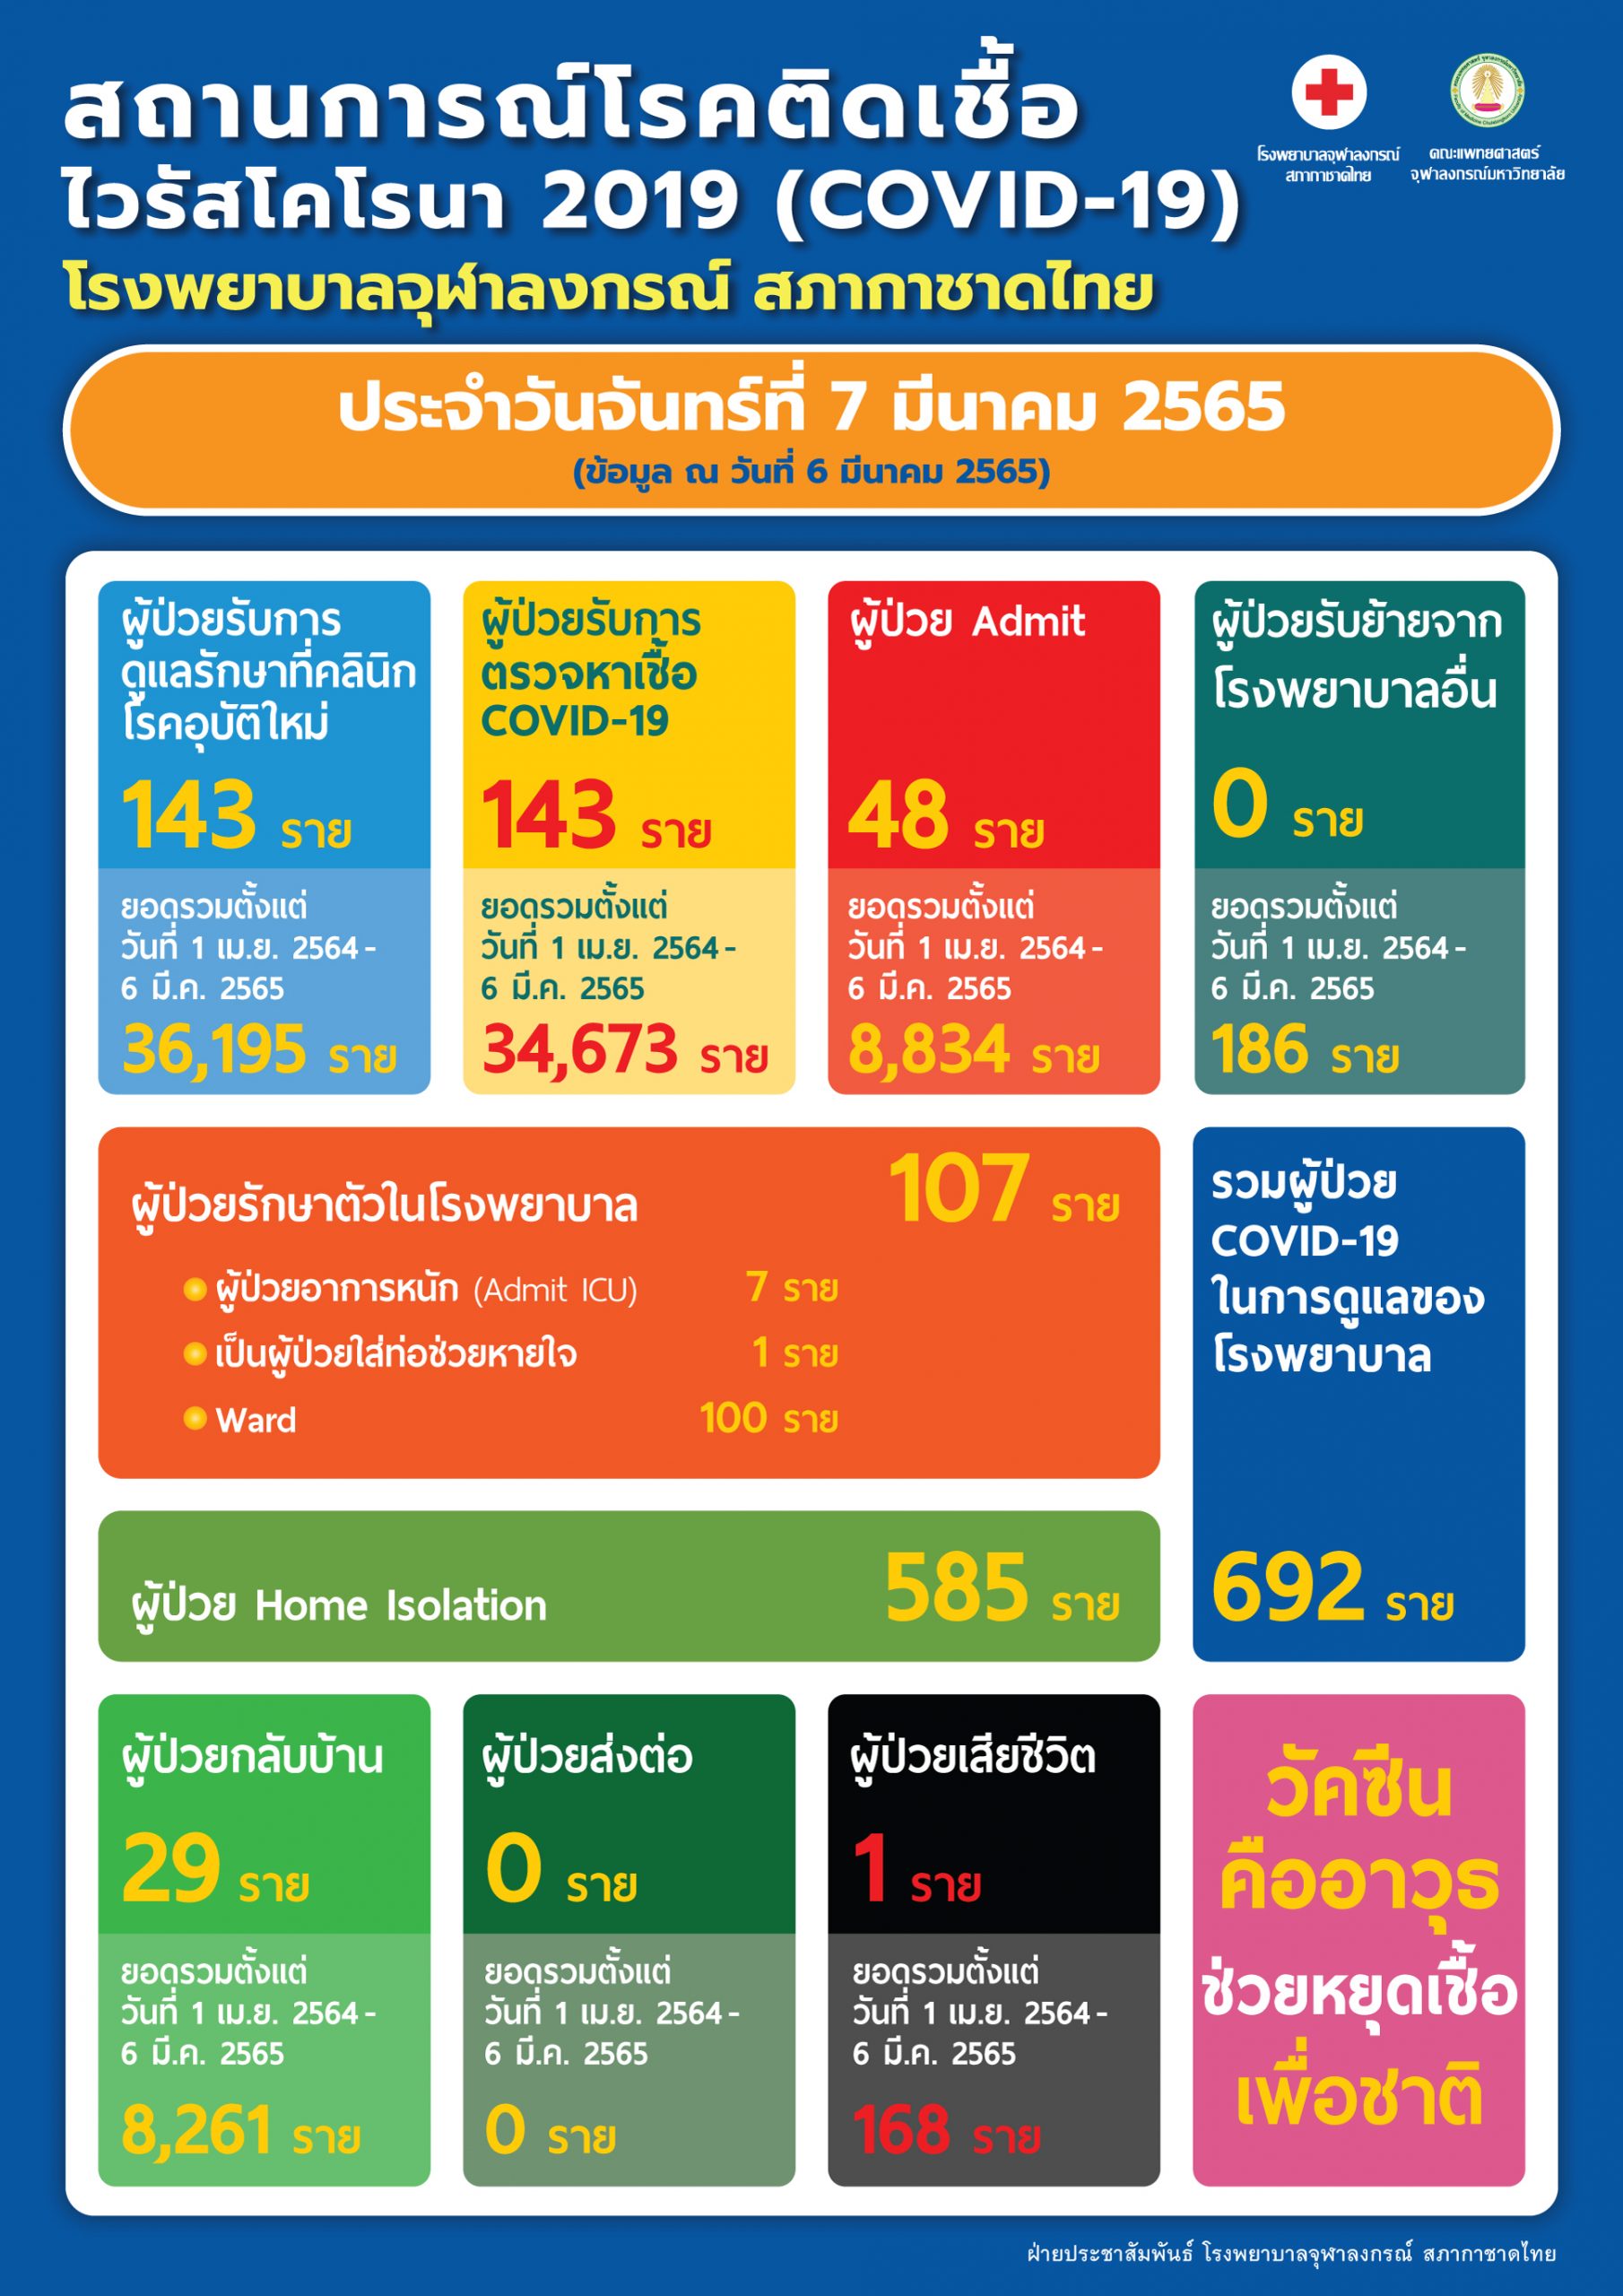 สถานการณ์โรคติดเชื้อไวรัสโคโรนา 2019 (COVID-19) โรงพยาบาลจุฬาลงกรณ์ สภากาชาดไทย ประจำวันจันทร์ที่ 7 มีนาคม 2565